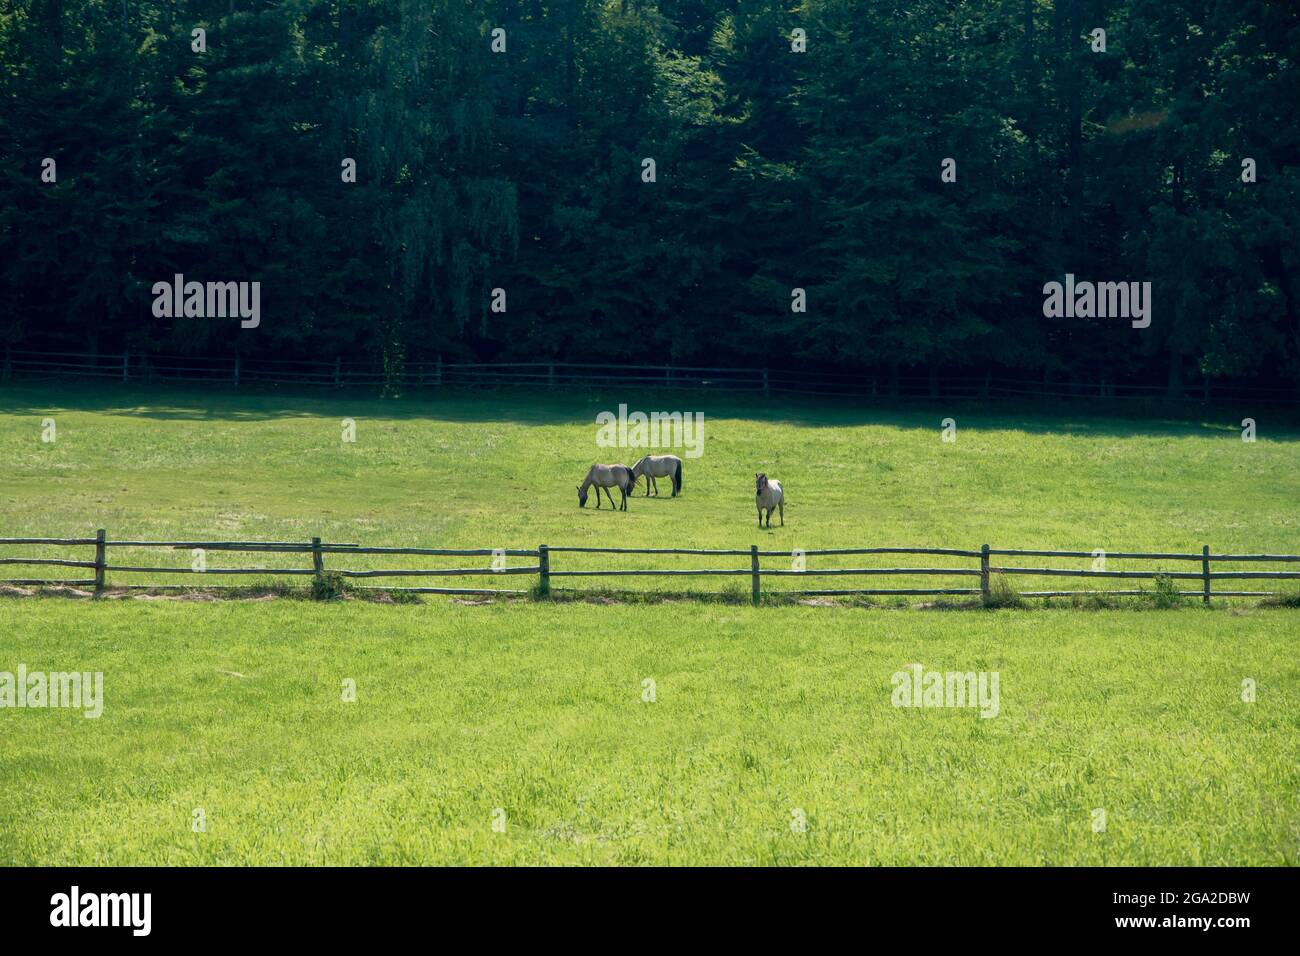 Kleine Gruppe von Pferden (polnischer Konik), die auf frischer, grüner Wiese grasen. Wald im Hintergrund. Schöner, sonniger Tag. Florianka, Roztocze, Polen. Stockfoto